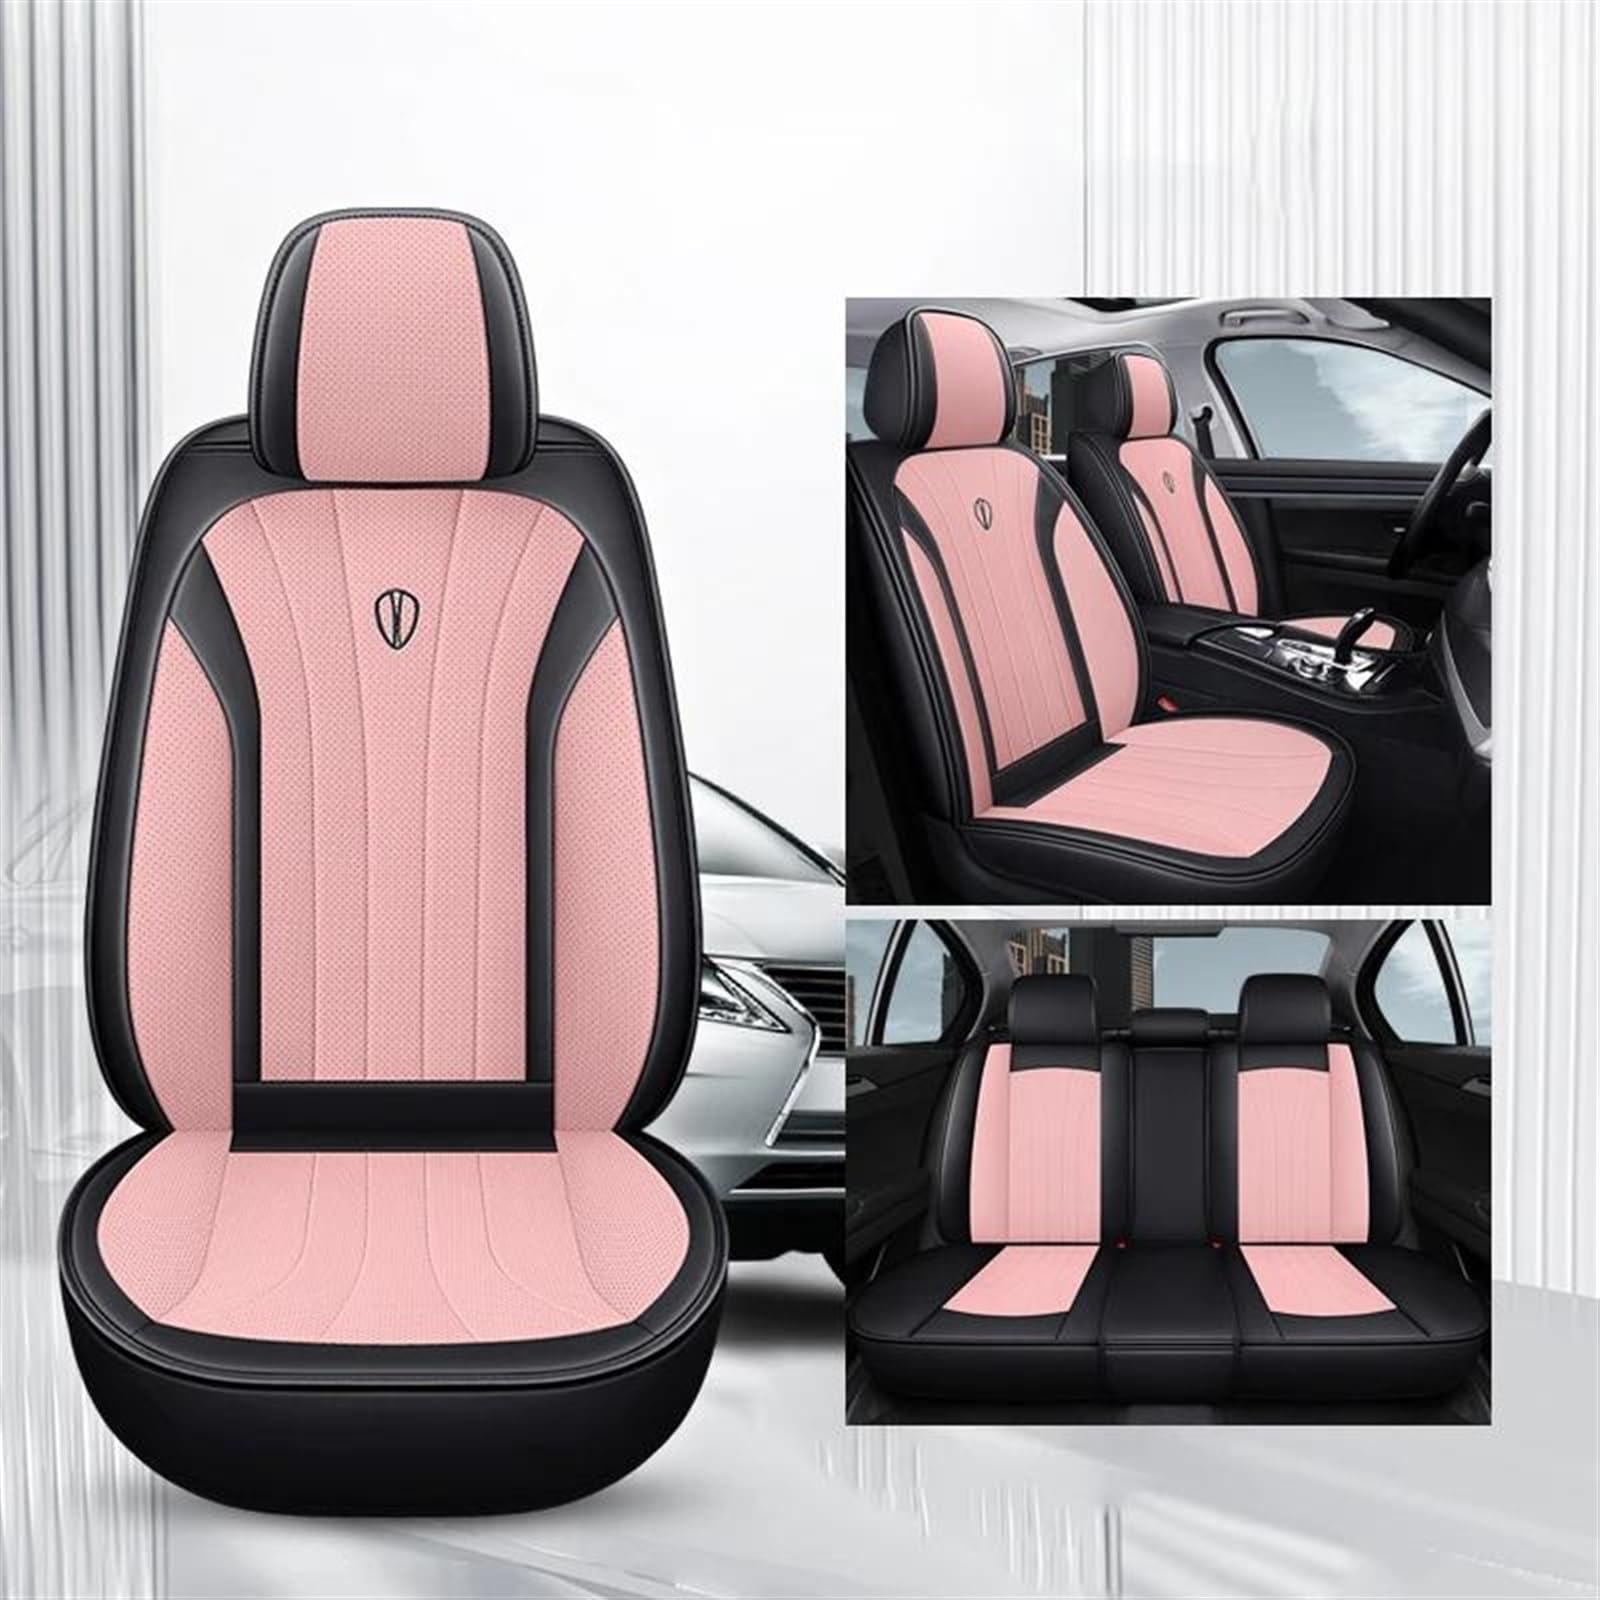 ESPYN Autositzschoner Universal Auto Sitzbezüge Für Megane 3 Für Passat Für B6 Für W205 Für F10 Für Suzuki Für Swift Voll Set Leder Auto-Sitzbezug(Black pink) von ESPYN